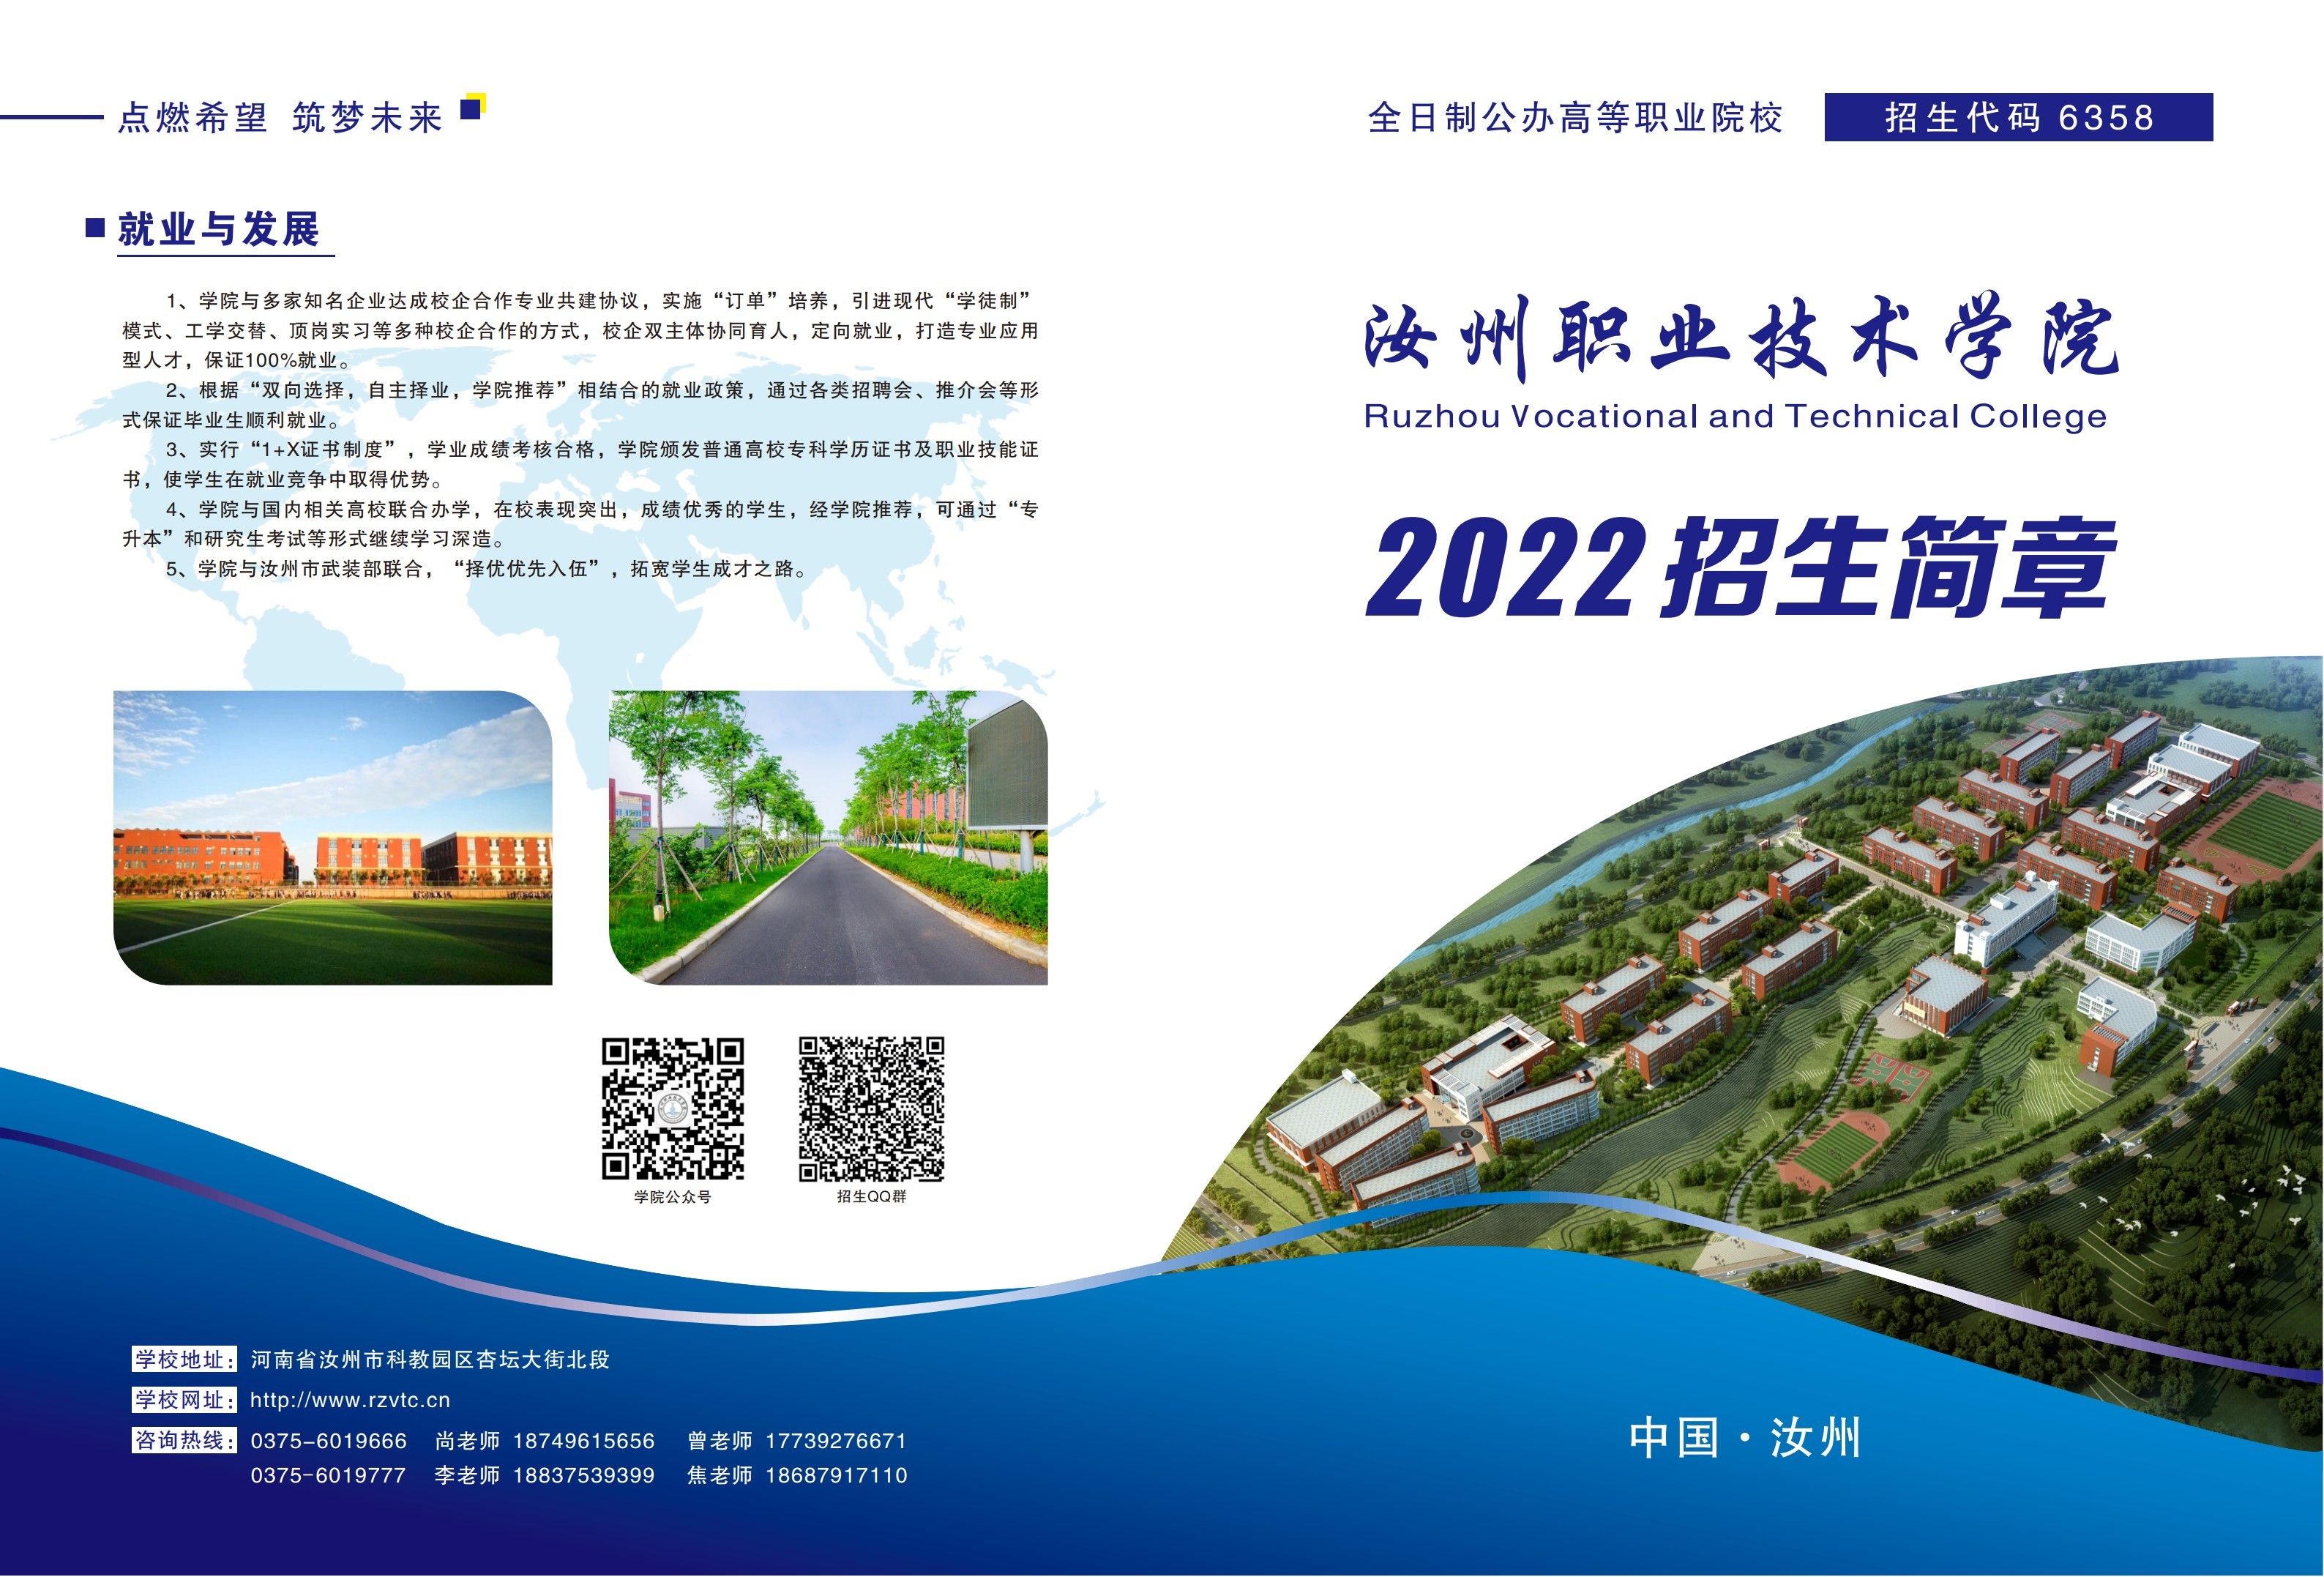 汝州职业技术学院2022年招生简章